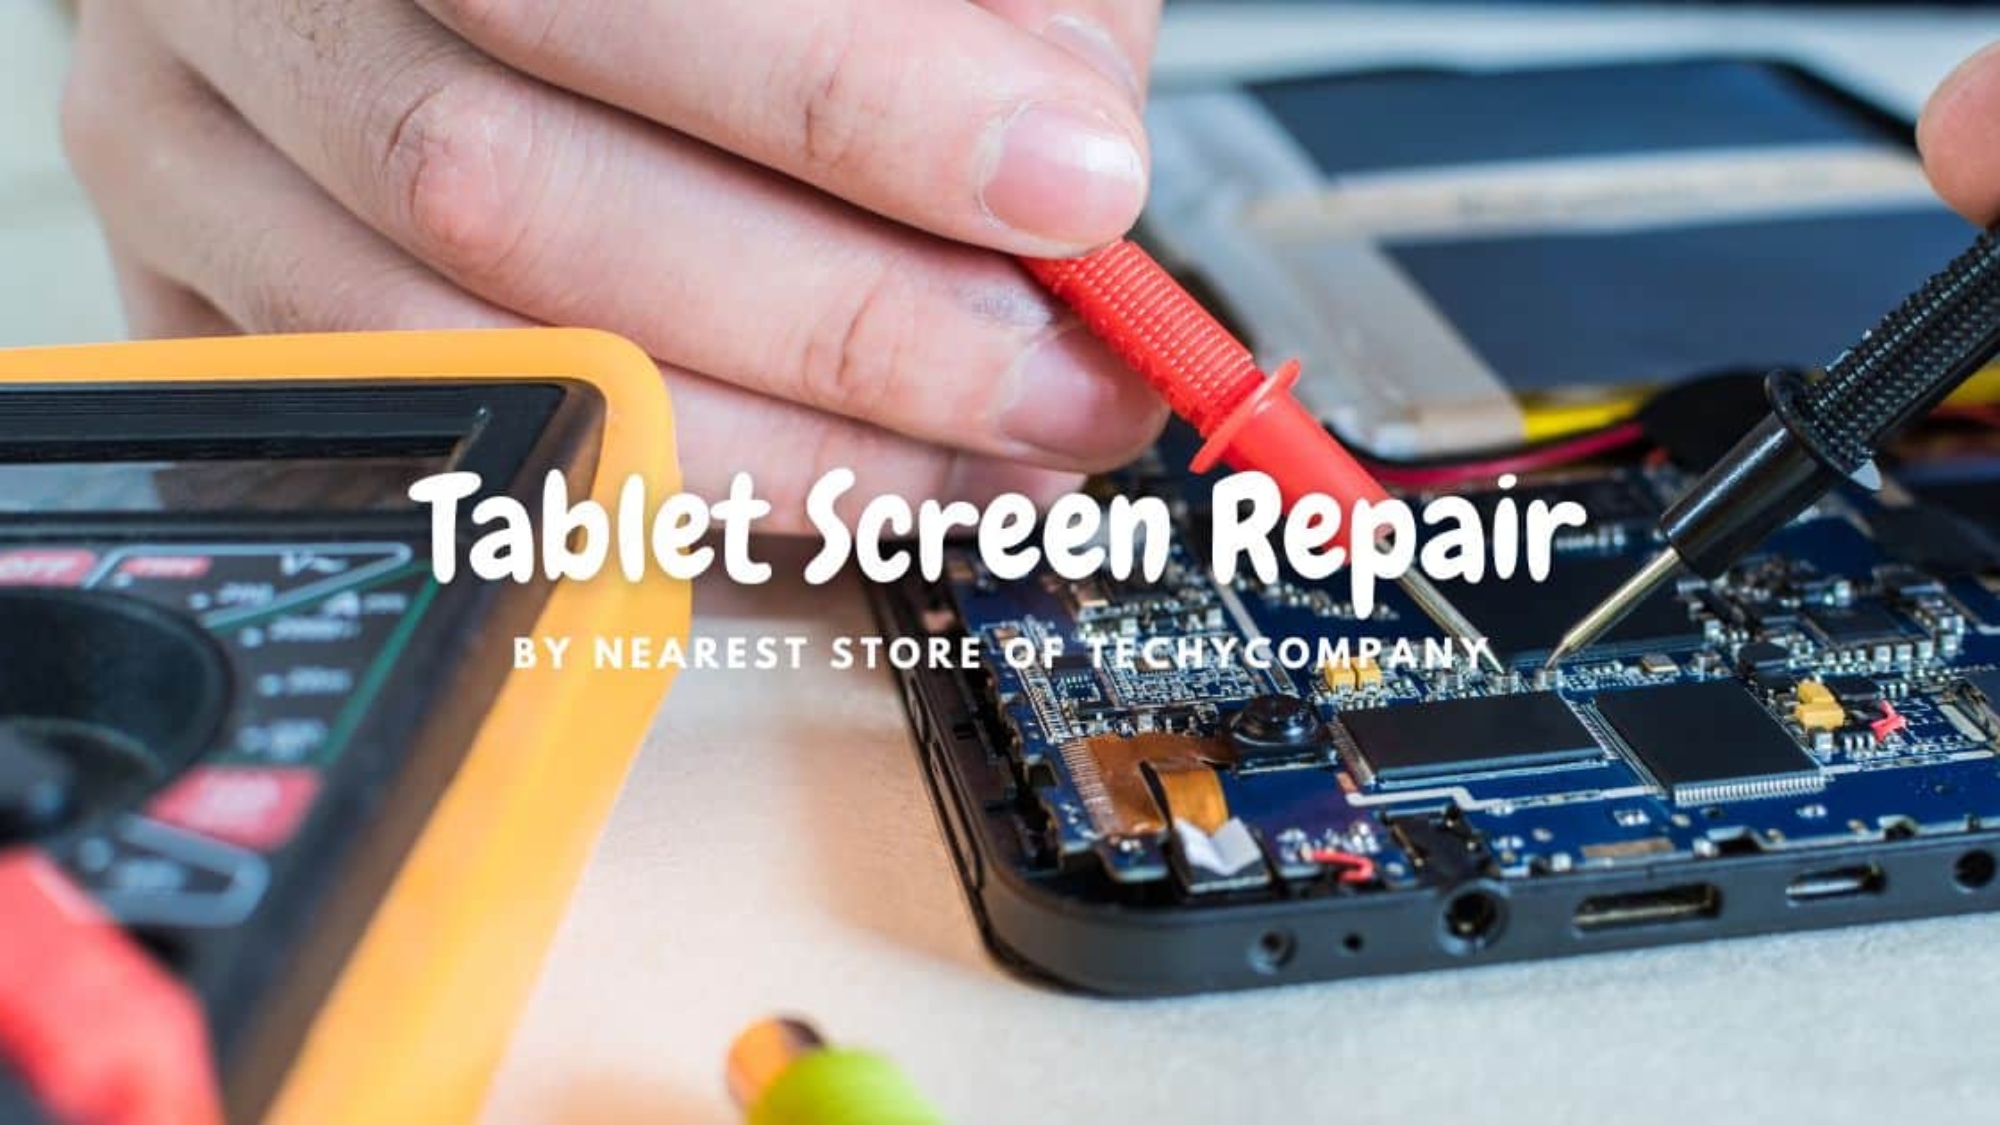 Tablet screen repair